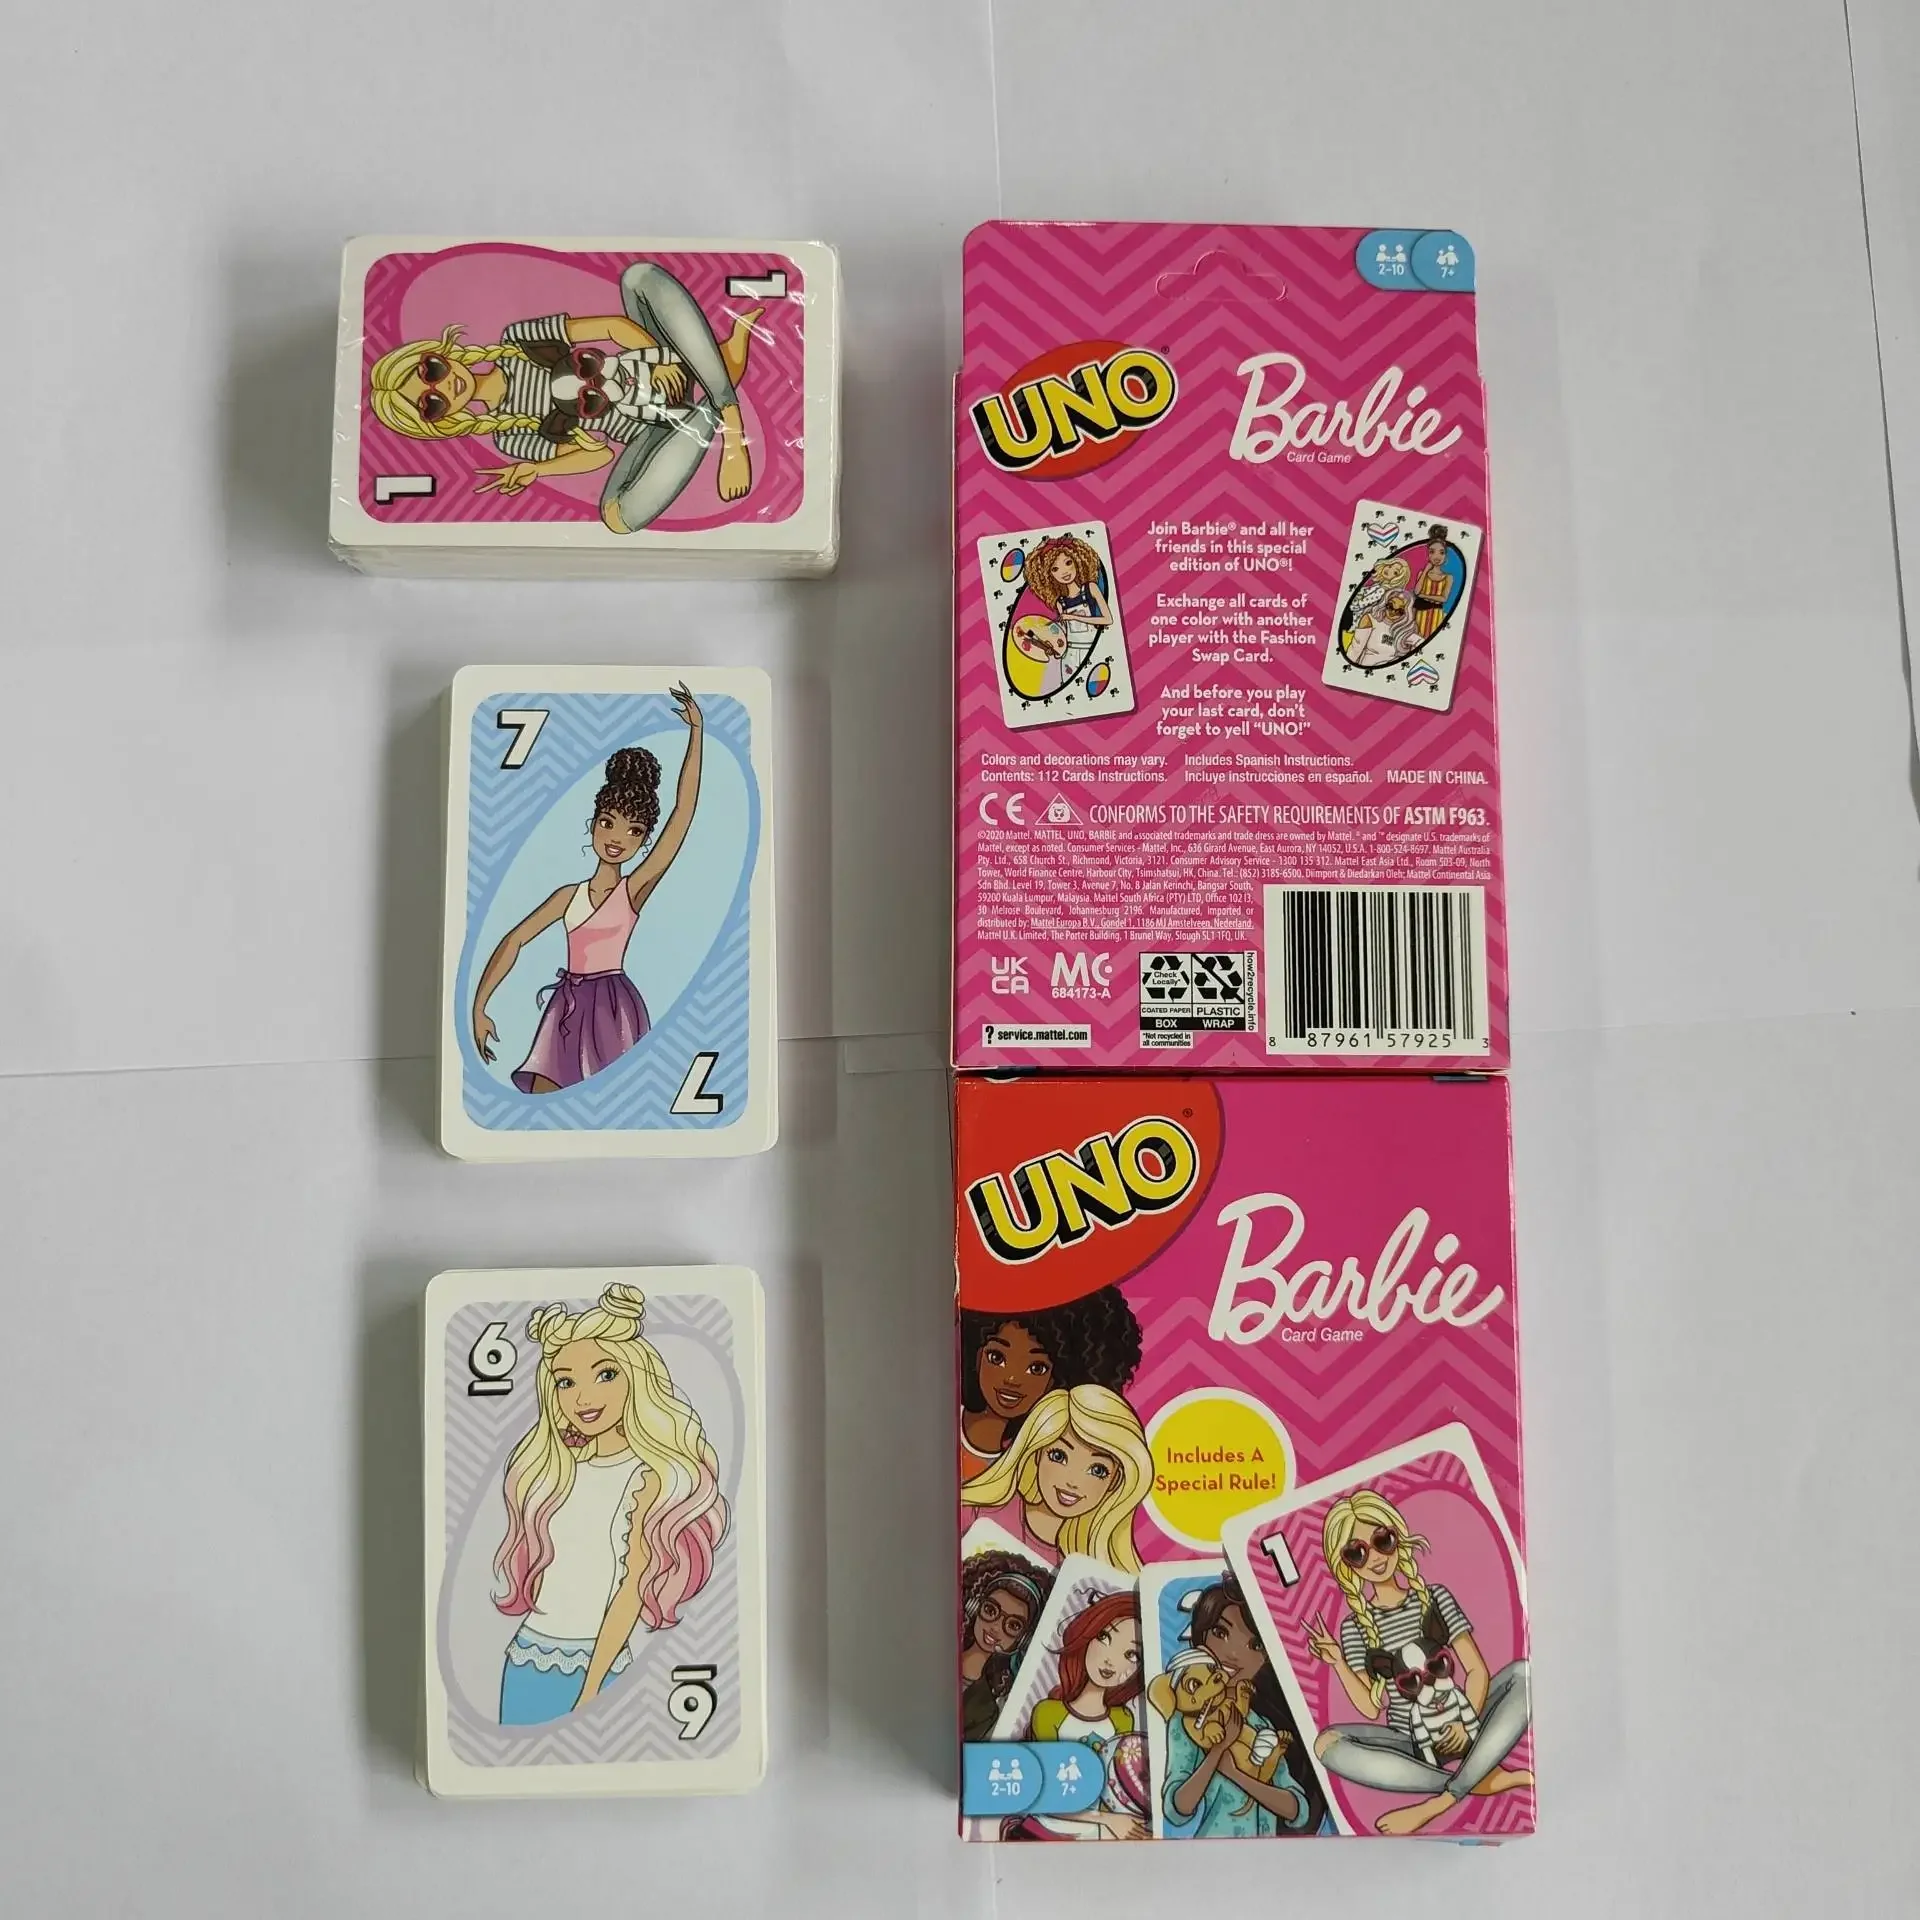 Jogo Uno da Barbie da Mattel de 2 a 10 Jogadores em Promoção na